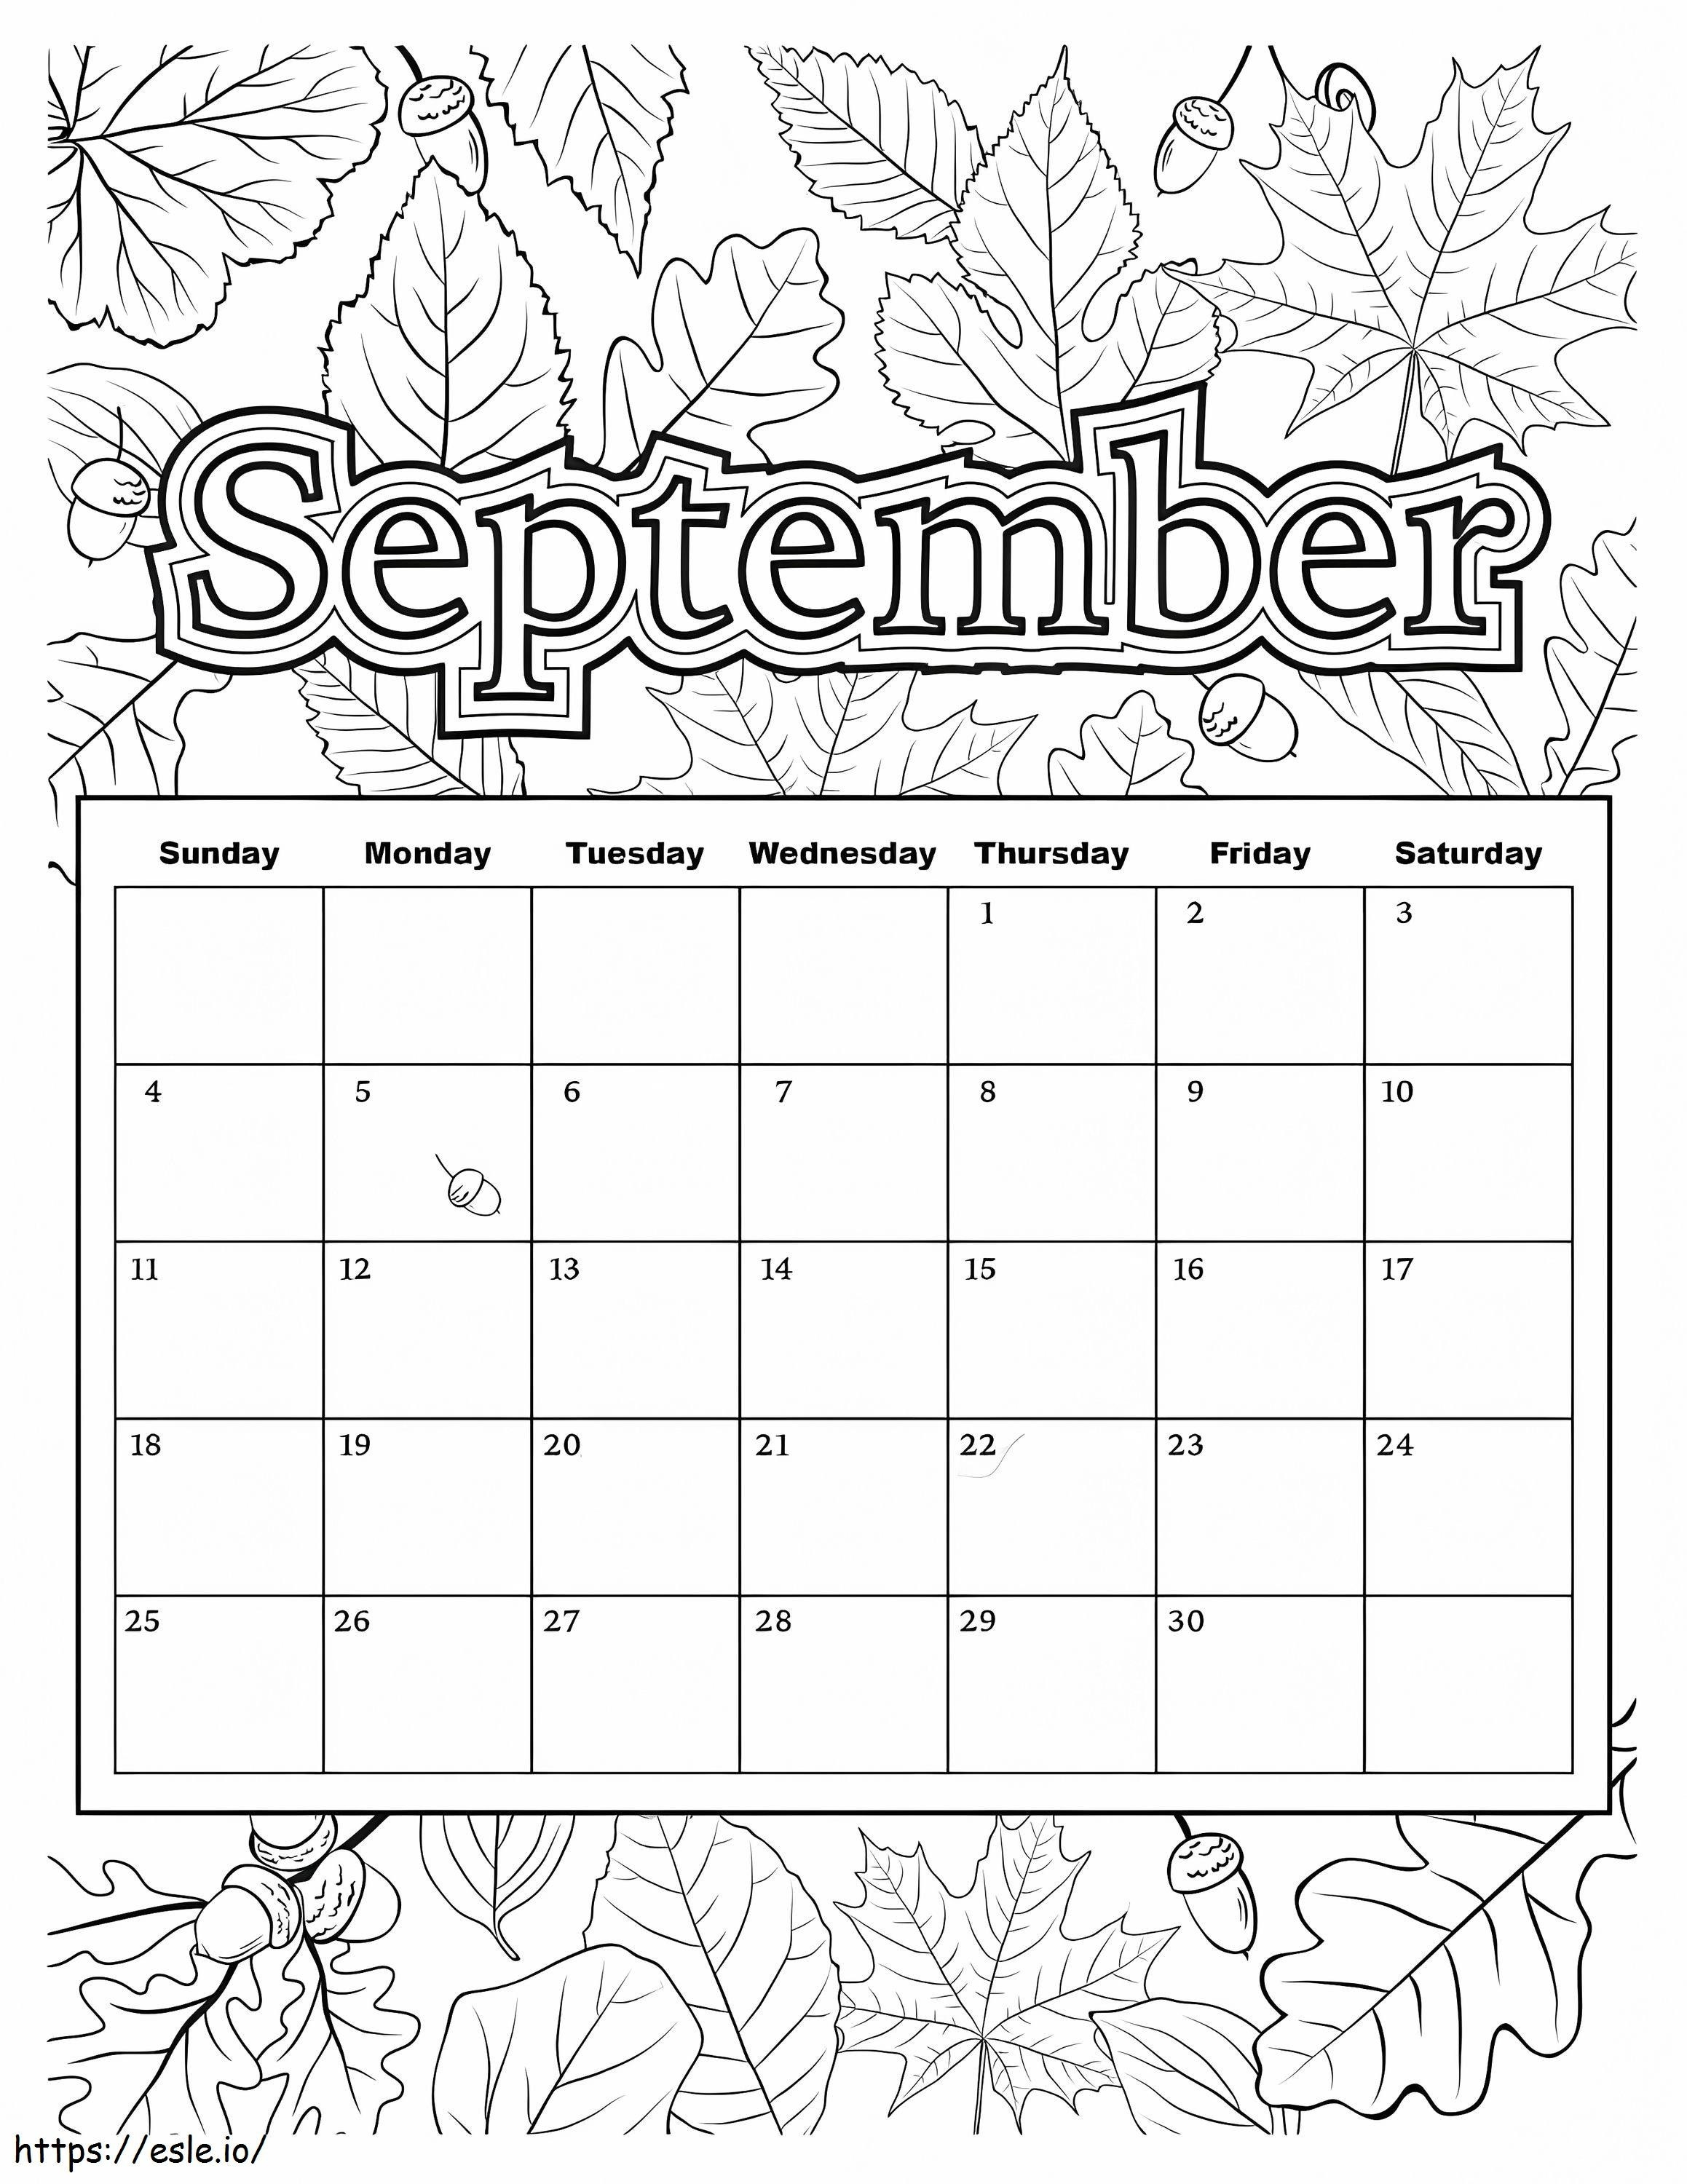 Calendario Septiembre para colorear